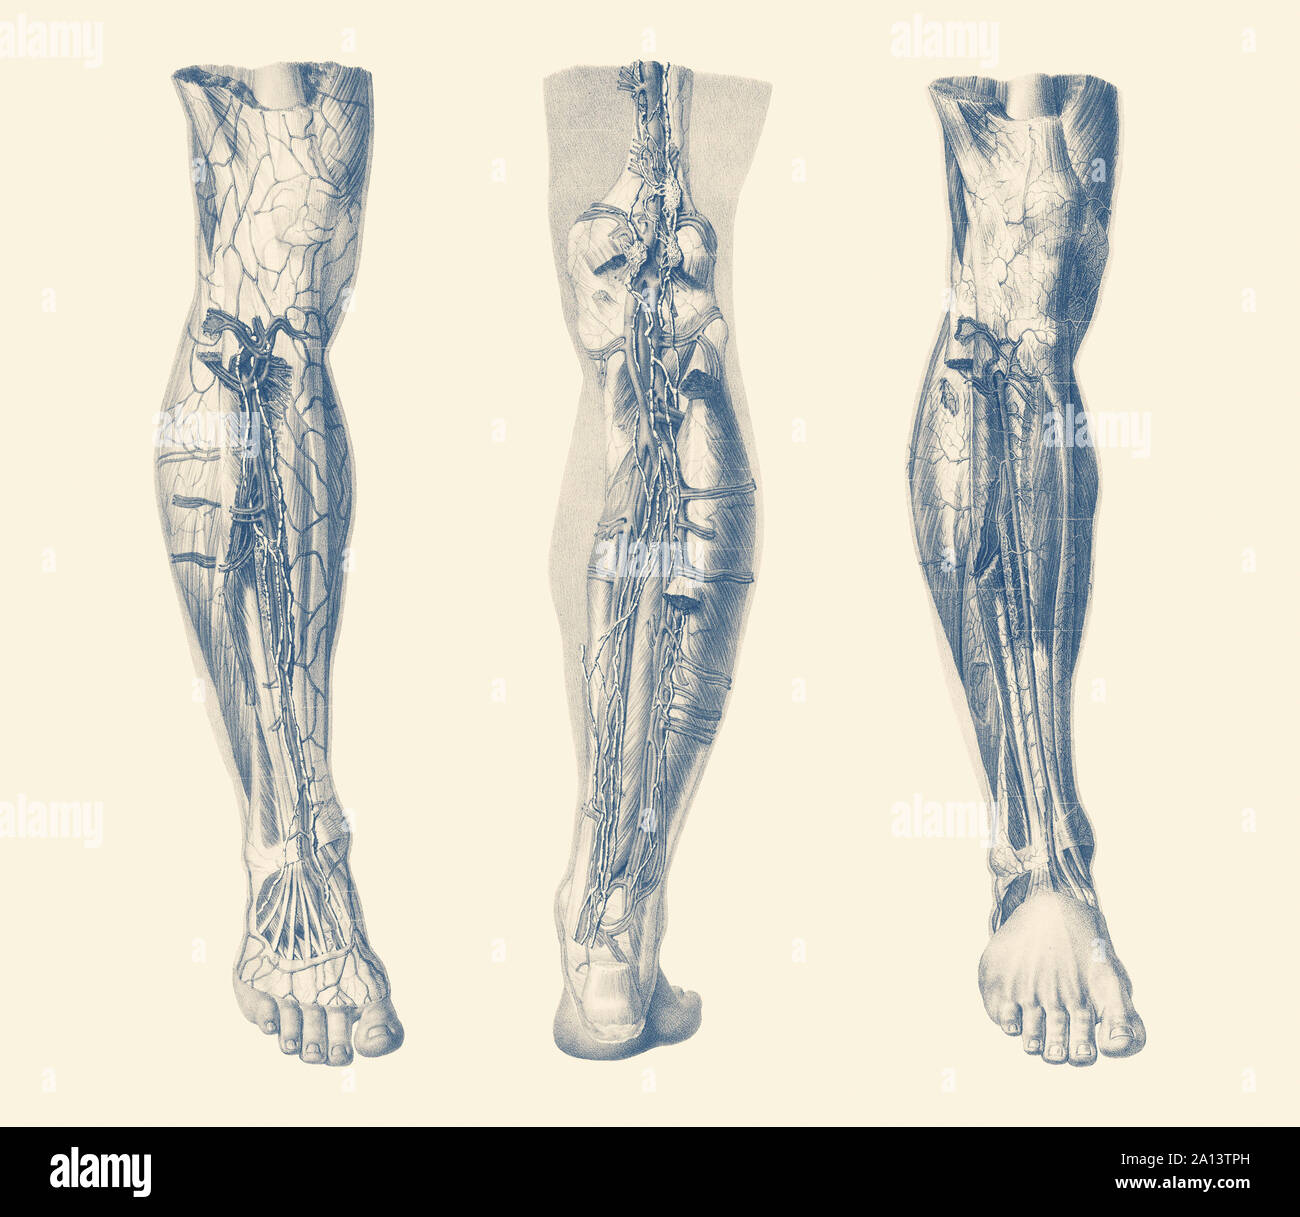 Vintage Print zeigt drei Ansichten der menschlichen Muskulatur der rechten Bein. Stockfoto